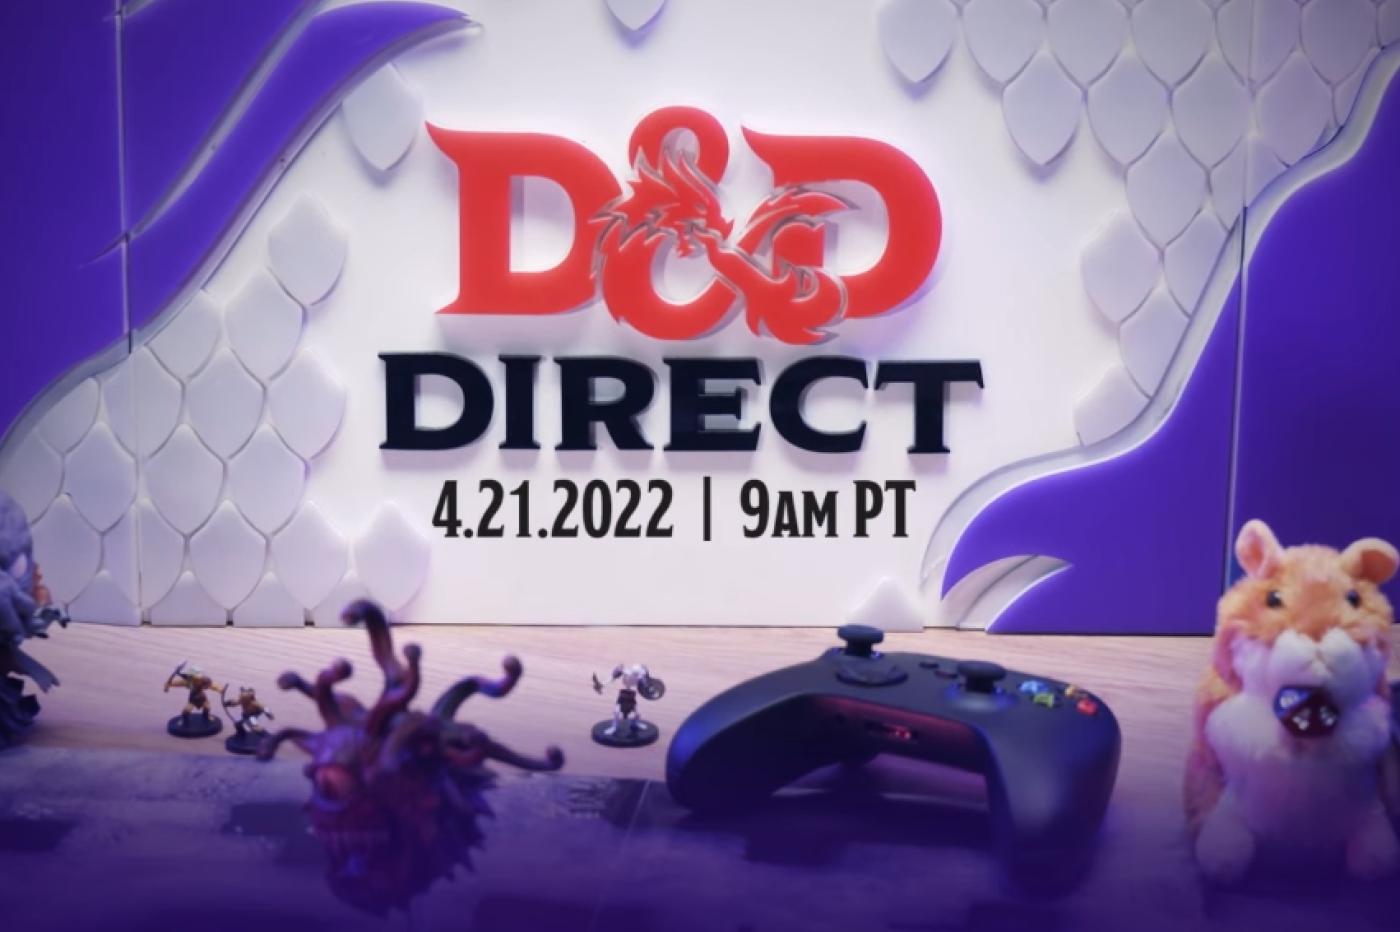 Affiche promotionnelle de l'événement D&D Direct, son logo, sa date, et une table avec des figurines de l'univers et une manette de Xbox